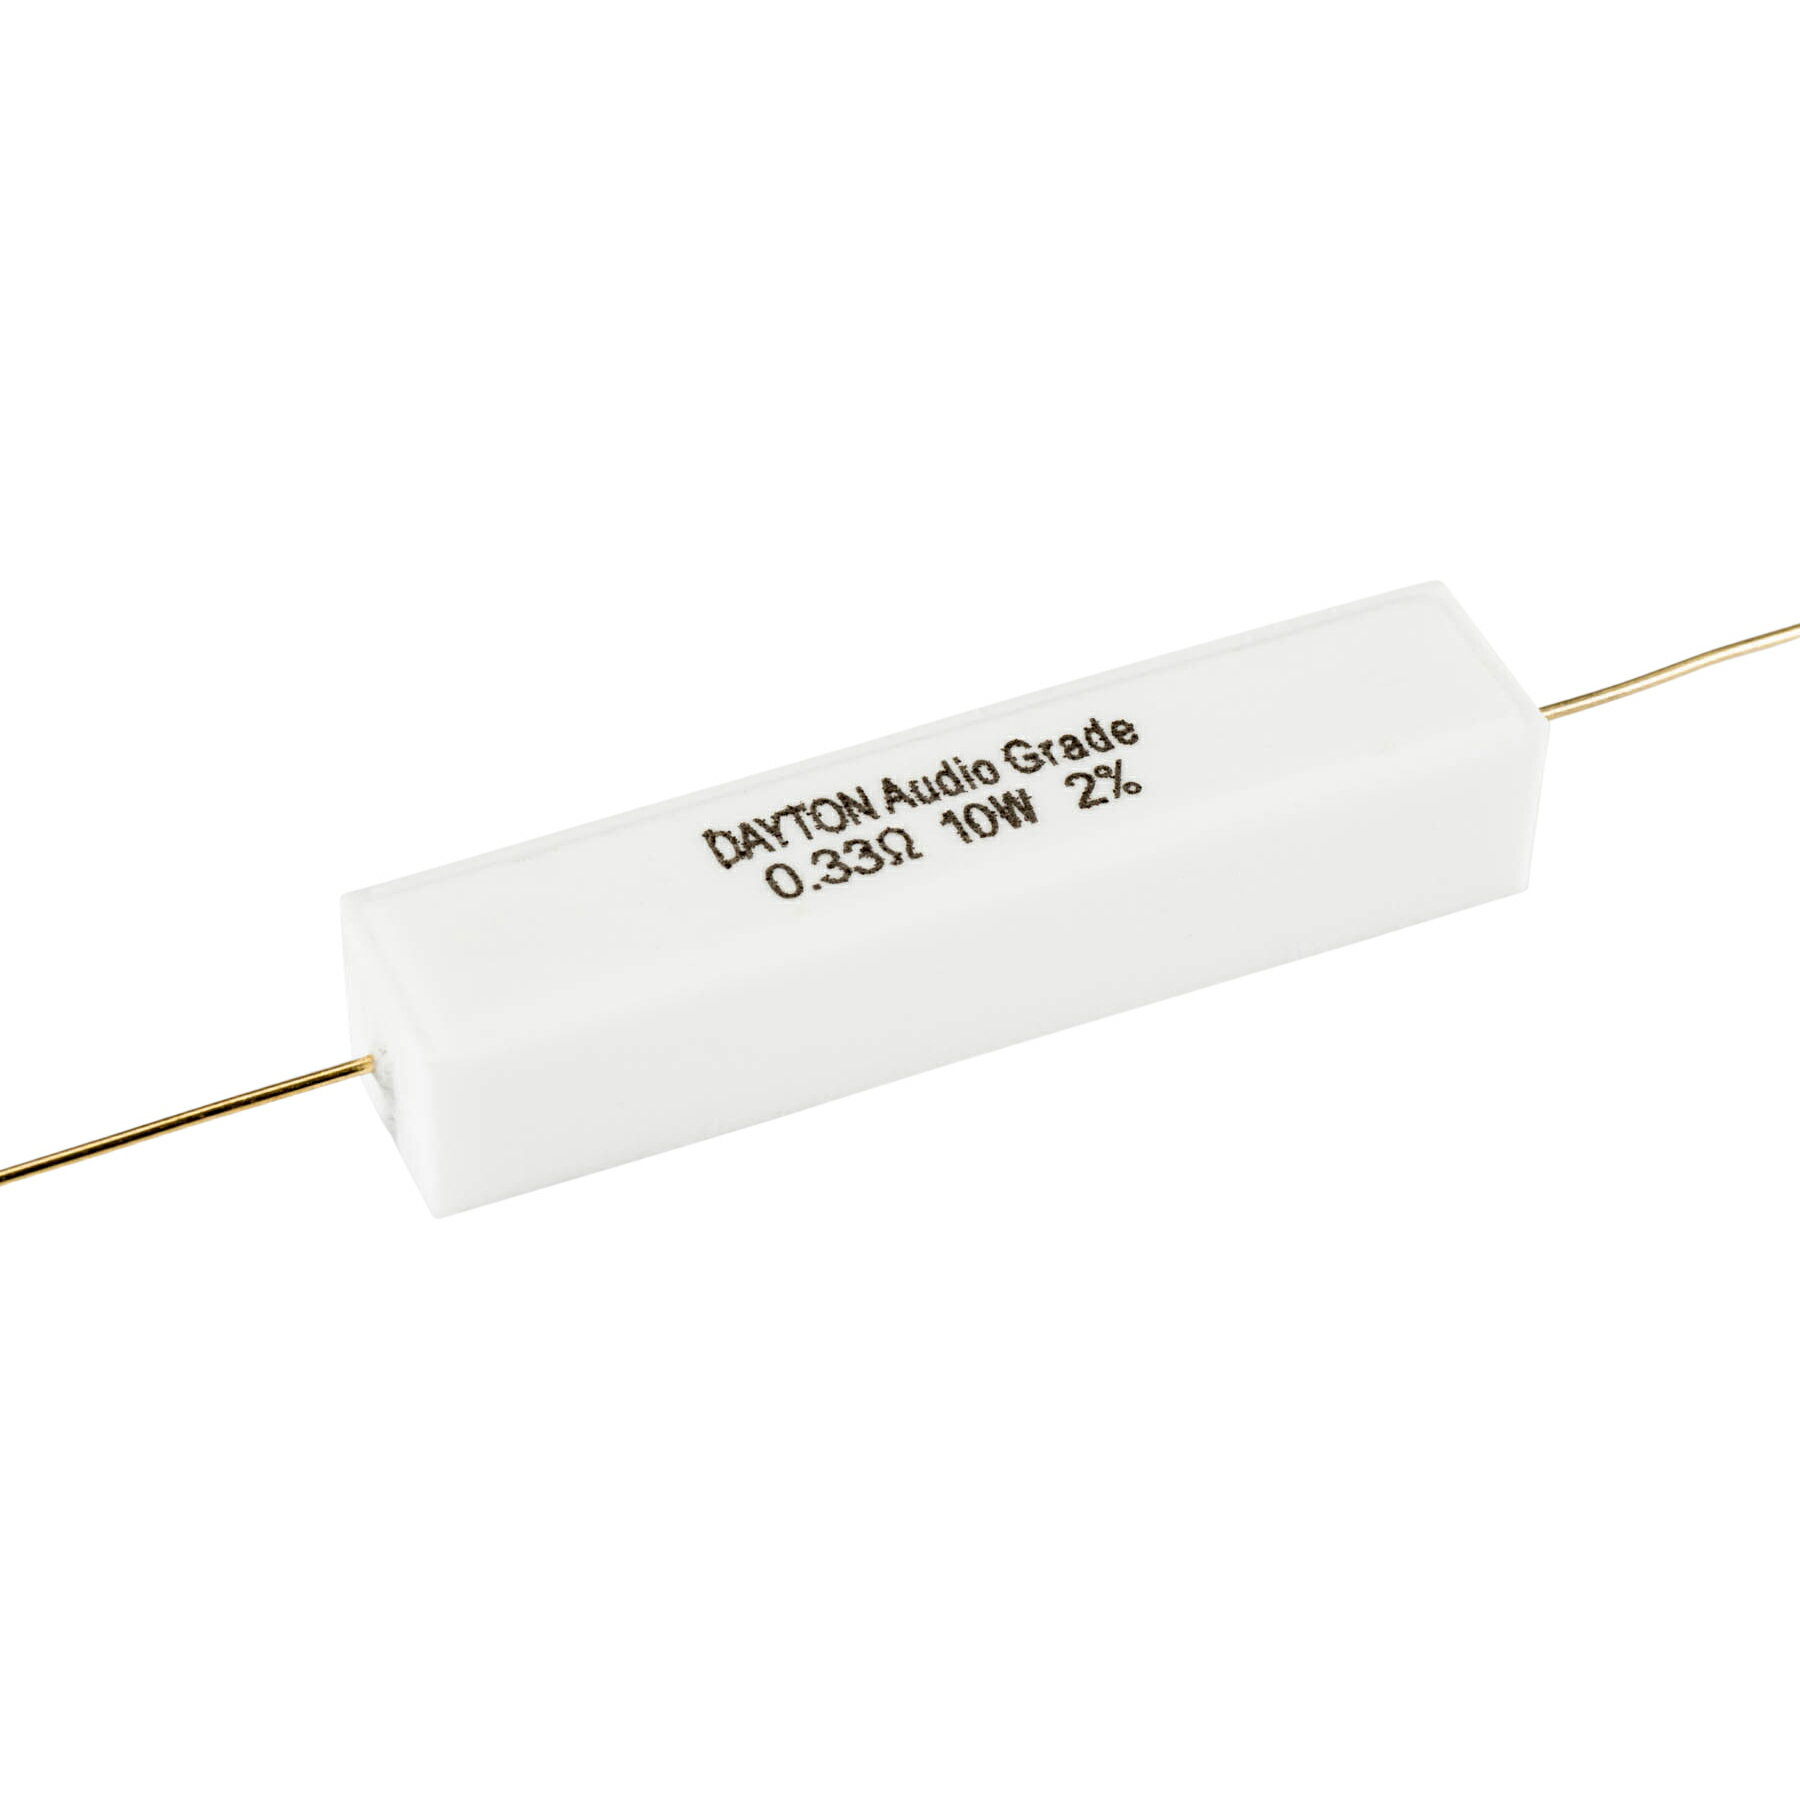 [CR11]Dayton Audio (10W) 3.3Ω（2個セット） | オーディオ用 Resistor レジスタ 抵抗器 レジスター Dayton Audioの10W セメント抵抗です！ ※表示価格は「2個セット」のお値段です。オーディオパーツでおなじみの『Dayton Audio』製のネットワーク用抵抗です。ゾーベル・ネットワークや固定式アッテネーターなどに最適な『ローノイズ・ローインダクティブ』タイプのオーディオ・グレードの抵抗です。製作誤差は、2％以下となっています。高い熱伝導率のセラミック・コアに、ニッケル・クローム抵抗体を『ローインダクティブ』巻き線構造として、 +/-2%の製作誤差をクリアーすると共に、金メッキされたOFCリード線を採用することによって、ローノイズ性能を高めています。あなたのスピーカー製作に、是非、ご利用ください。【主な仕様】■耐圧：10W■精度：+/-2%■構造：ローインダクティブ・巻線抵抗■材質：ニッケルクローム抵抗体、金メッキOFCリード線■寸法(mm)：48(長さ)x10(幅)x10(高さ)■重量：約20g【取扱いラインナップ】（30種類） 0.33Ω、0.51Ω、0.82Ω、1.0Ω、1.2Ω、1.5Ω2.0Ω、2.4Ω、2.7Ω、3.0Ω、3.3Ω、3.7Ω4.0Ω、4.3Ω、4.7Ω、5.1Ω、5.6Ω、6.0Ω6.5Ω、7.0Ω、7.5Ω、8.0Ω、9.1Ω、10.0Ω12.5Ω、16.0Ω、20.0Ω、25.0Ω、30.0Ω、40.0Ω 5